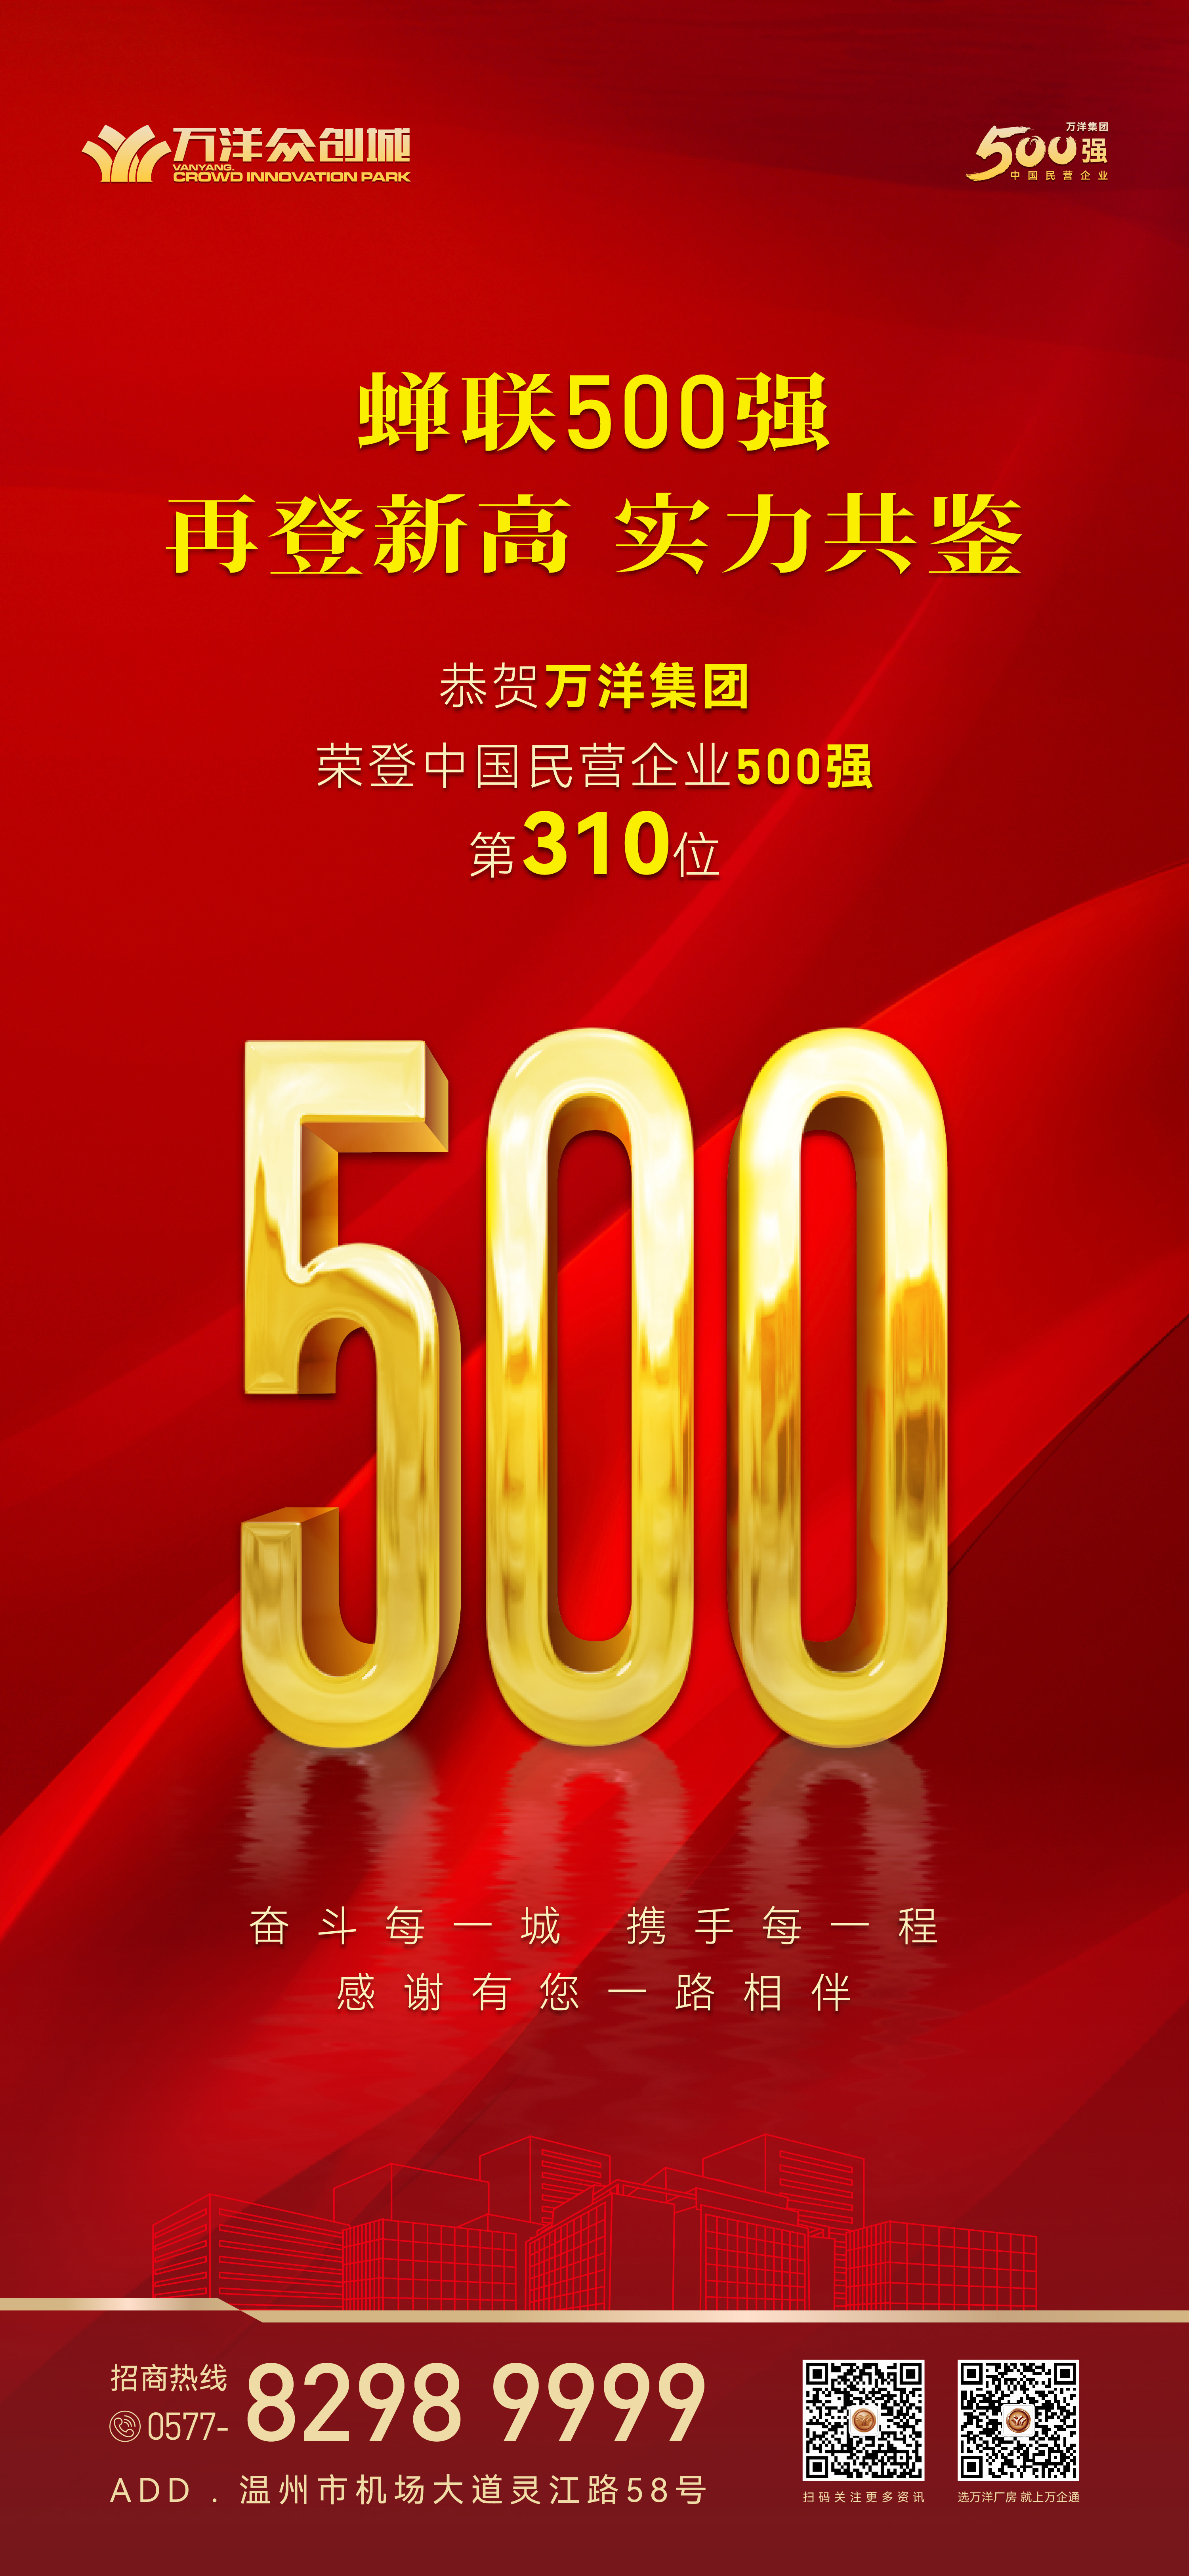  立博app官网下载(中国)集团有限公司再登中国民营企业500强榜单